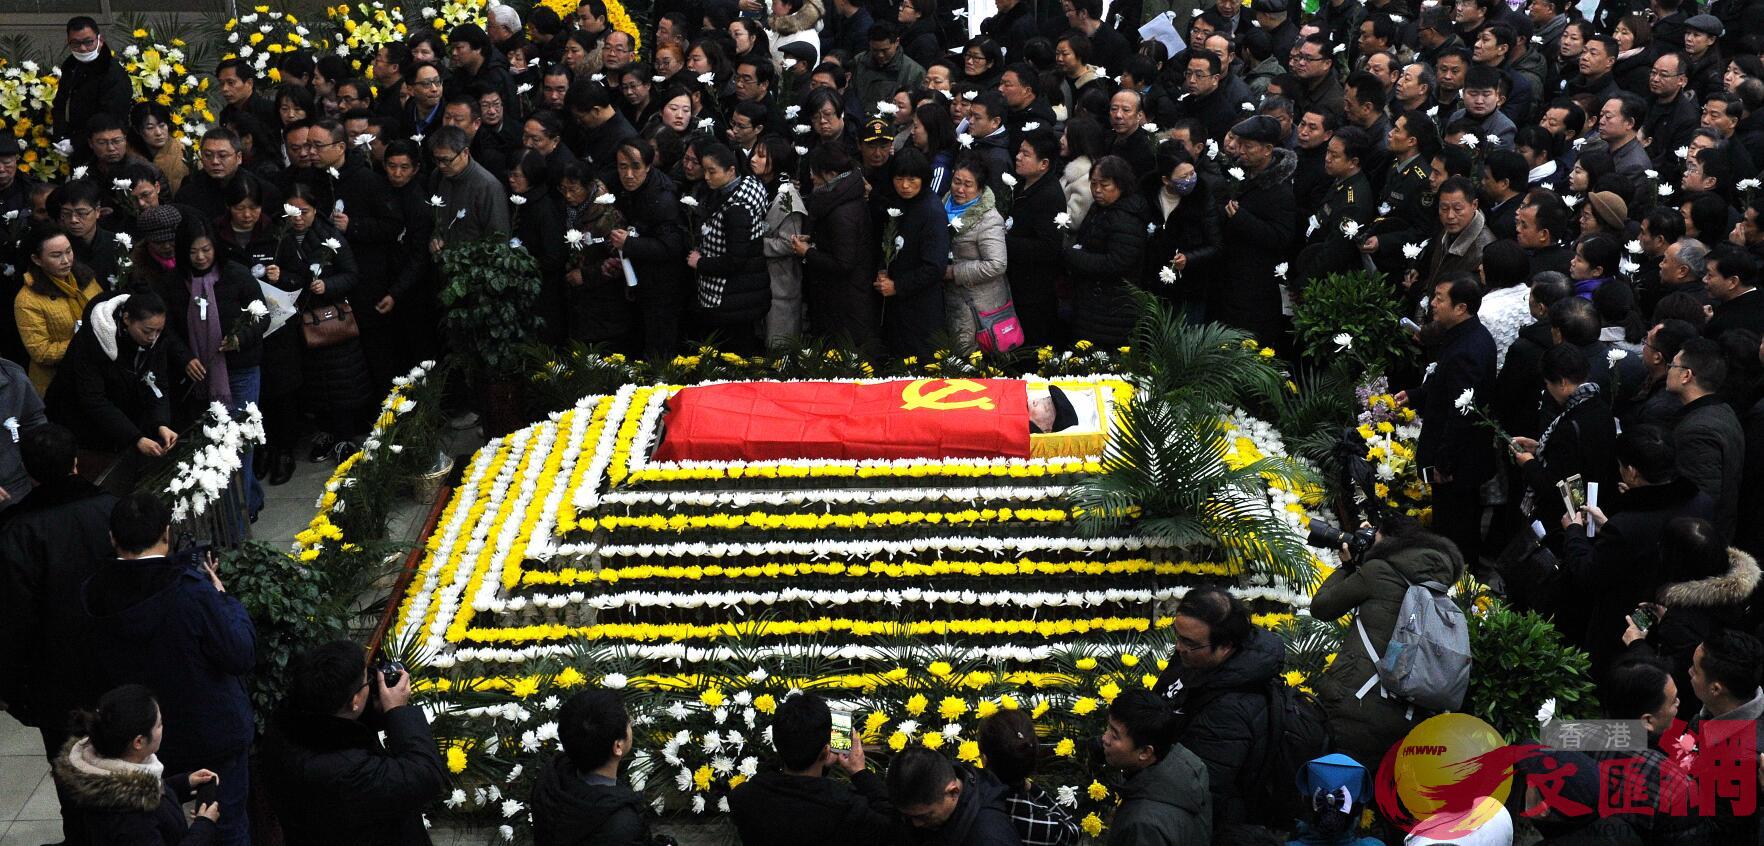 2018年12月19日A二月河追悼會在河南省南陽市殯儀館舉行]河南傳真^